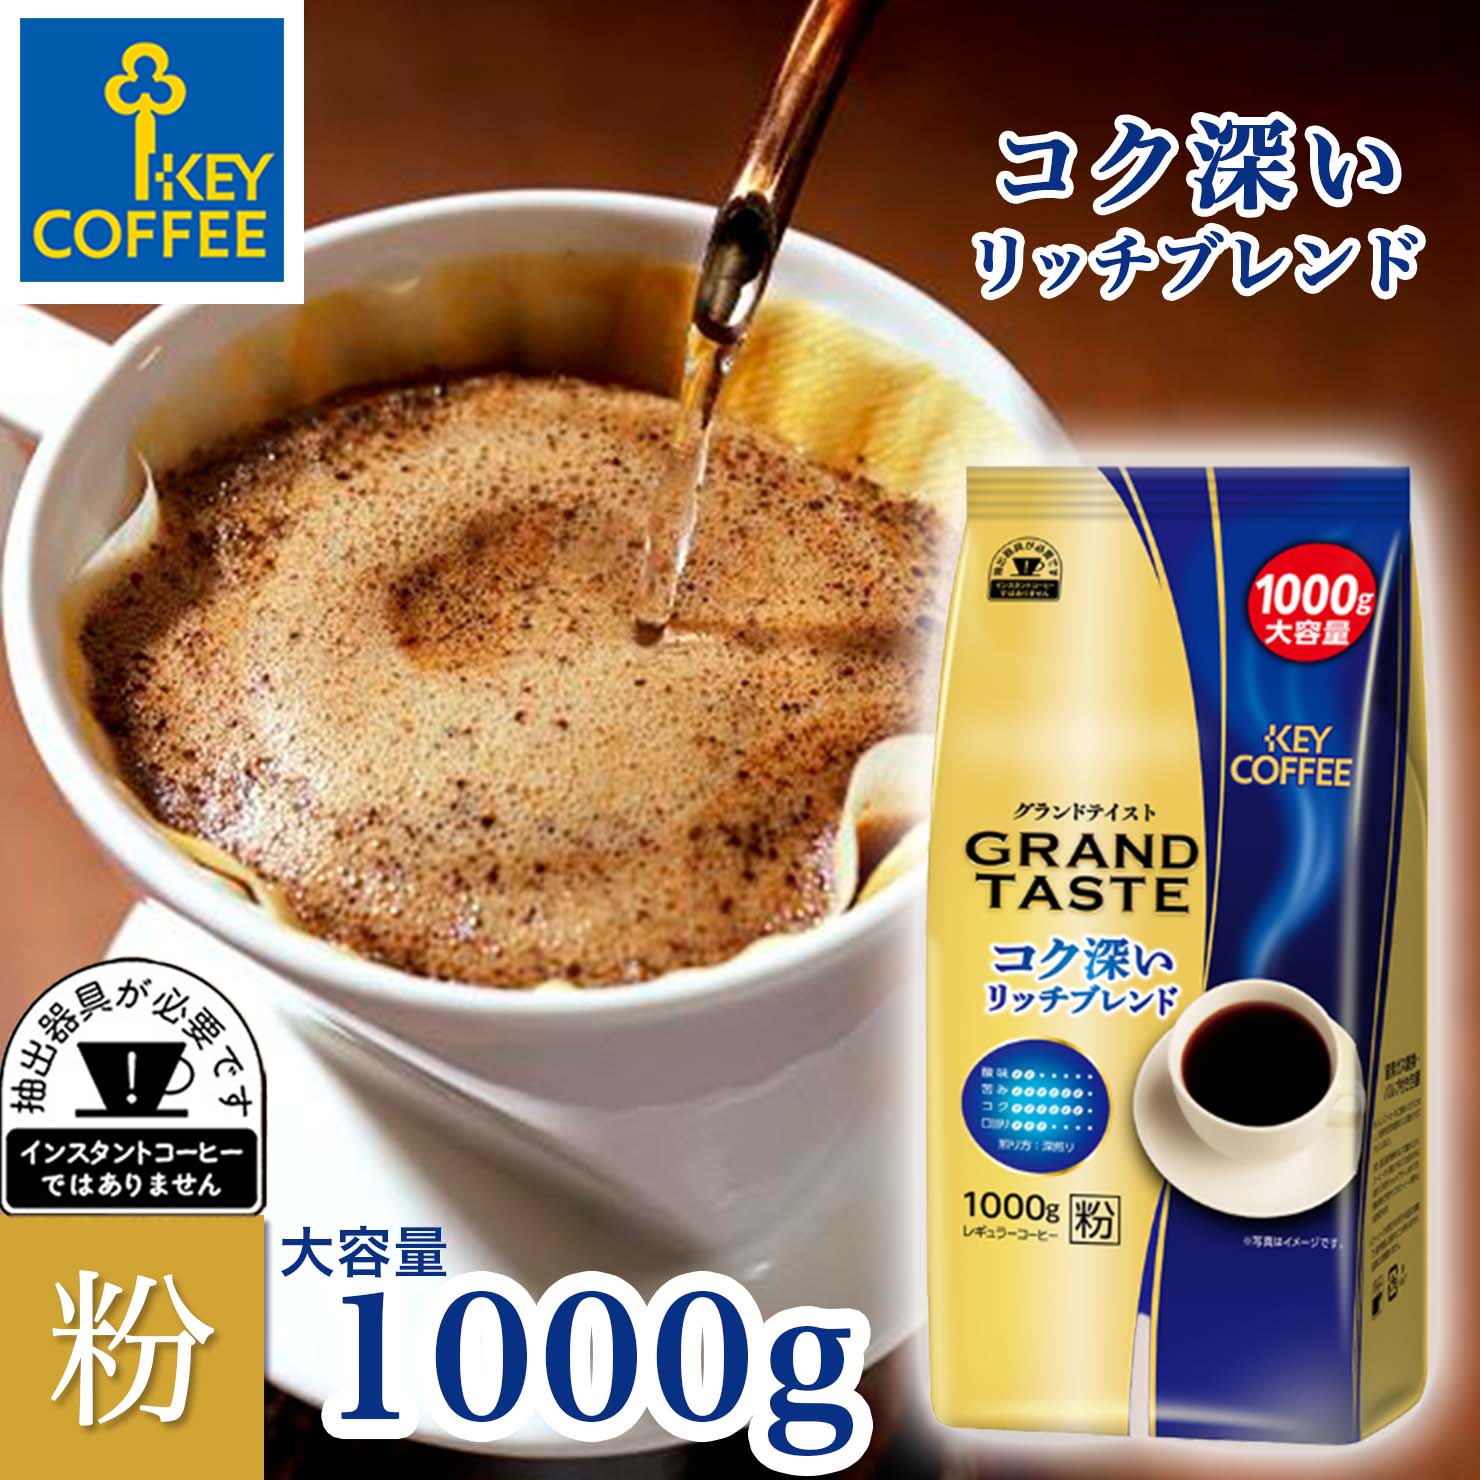 コーヒー コーヒー粉 グランドテイスト コク深いリッチブレンド 1kg ブレンドコーヒー 100杯分 送料無料 大容量 お徳用 レギュラーコーヒー keycoffee